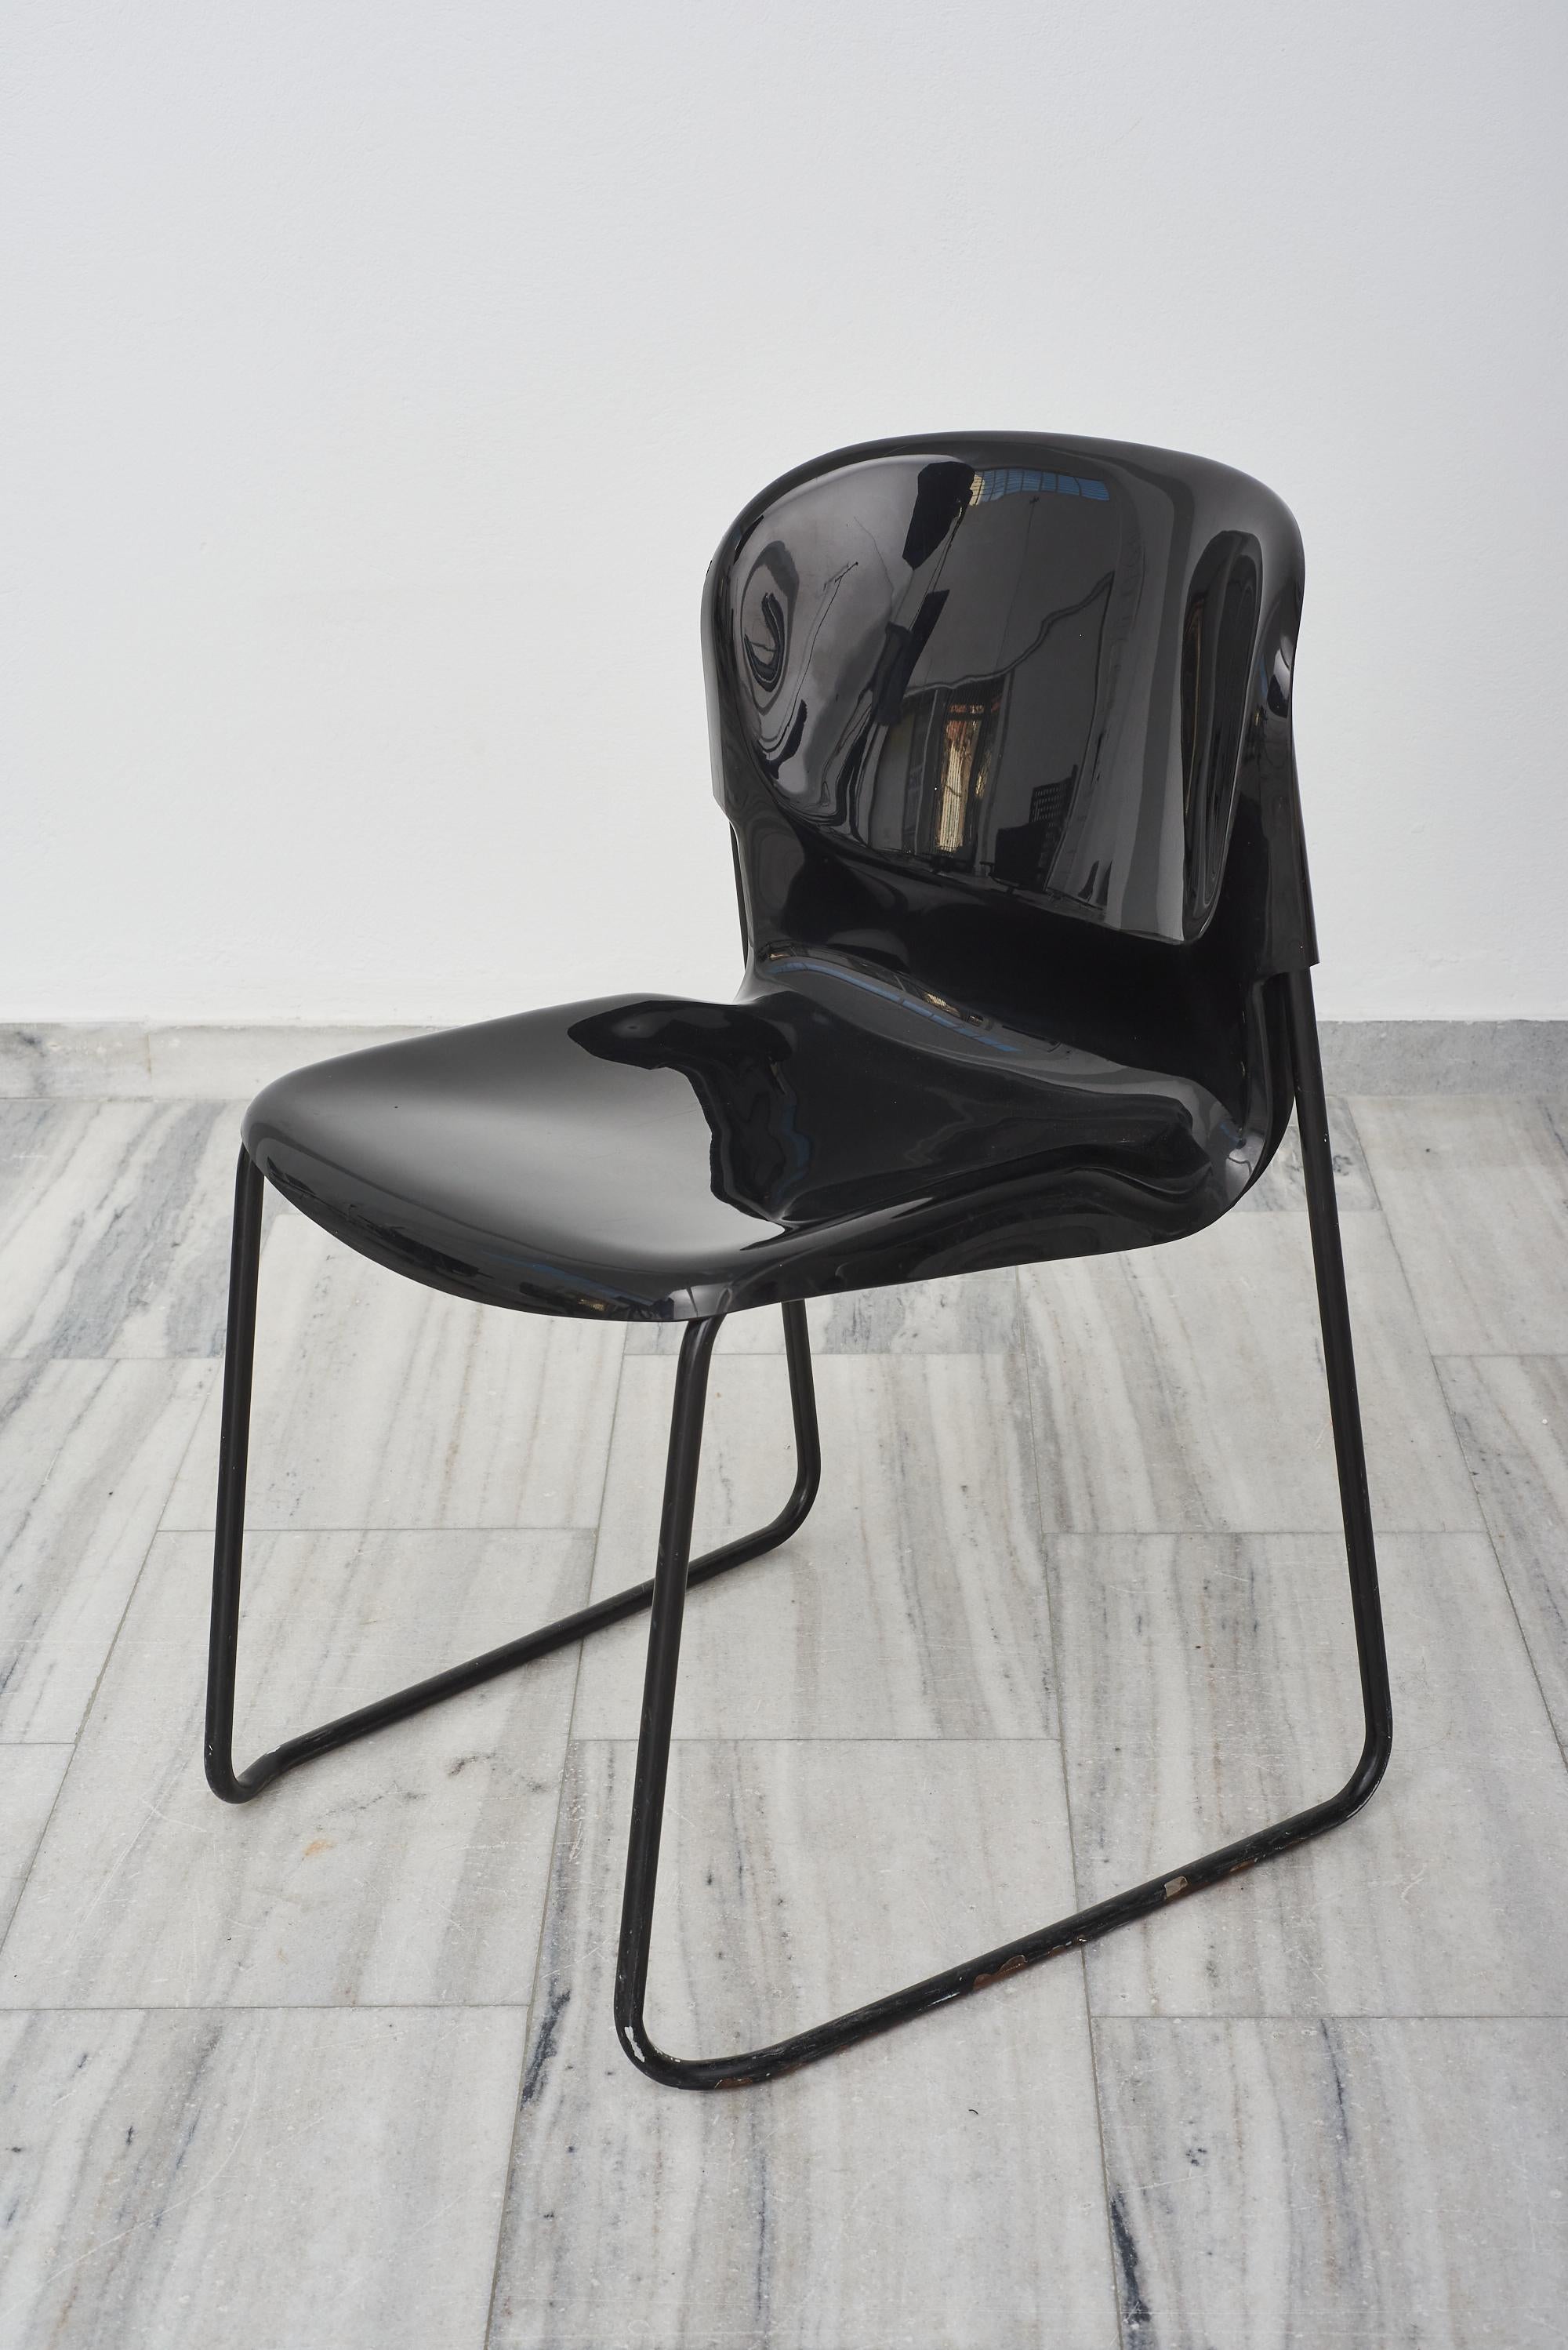 Chaise empilable SM400 noire et brillante de Gerd Lange pour le fabricant ouest-allemand Drabert, années 1980.
Les chaises de Gerd Lange ont connu un grand succès.Il a eu une influence décisive sur l'histoire du design de la République fédérale